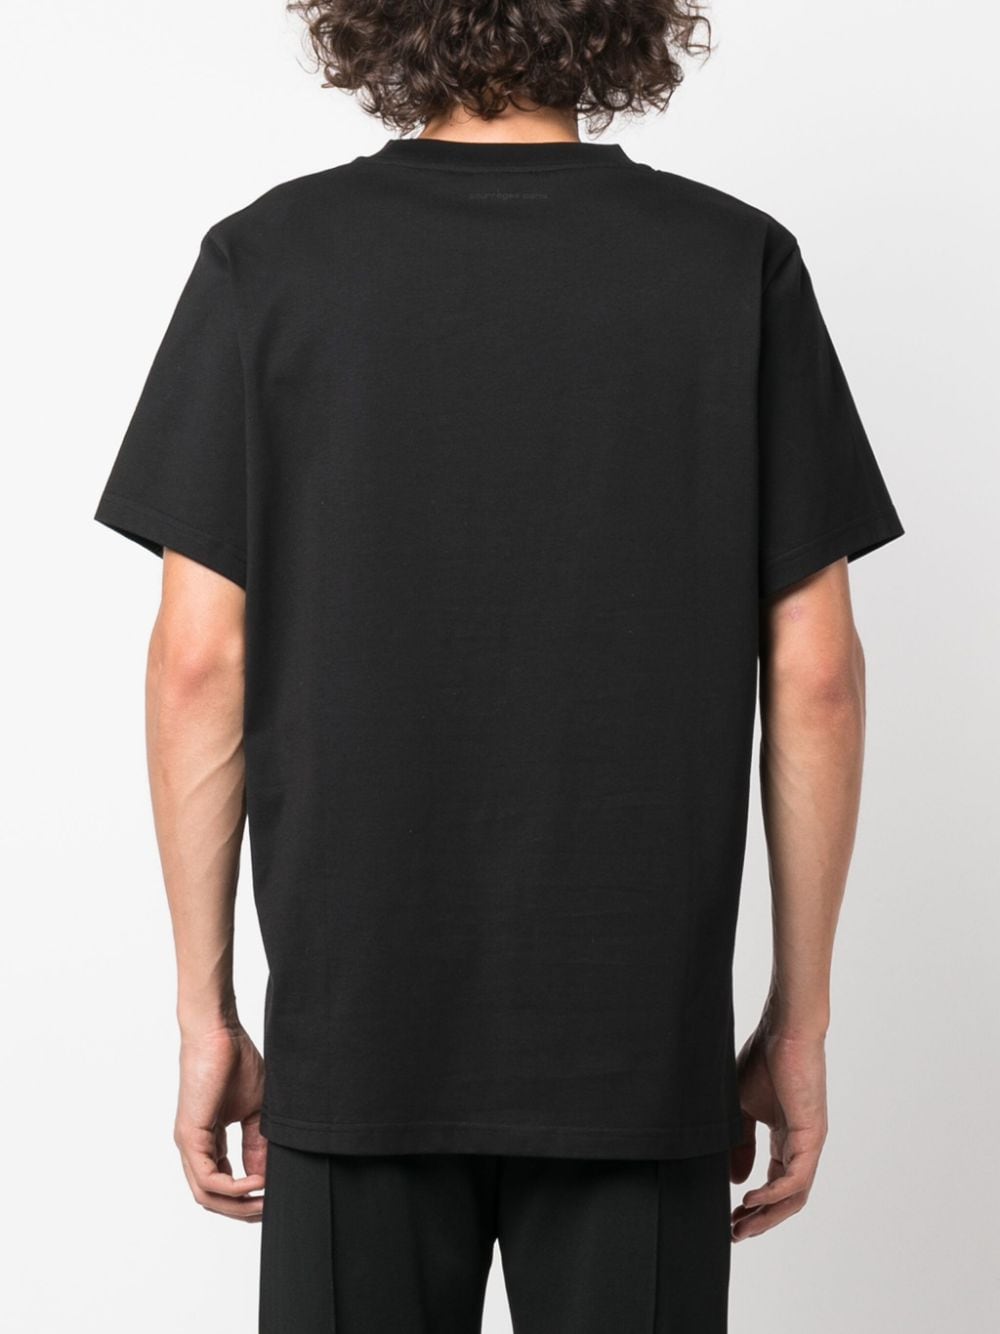 black basic t-shirt